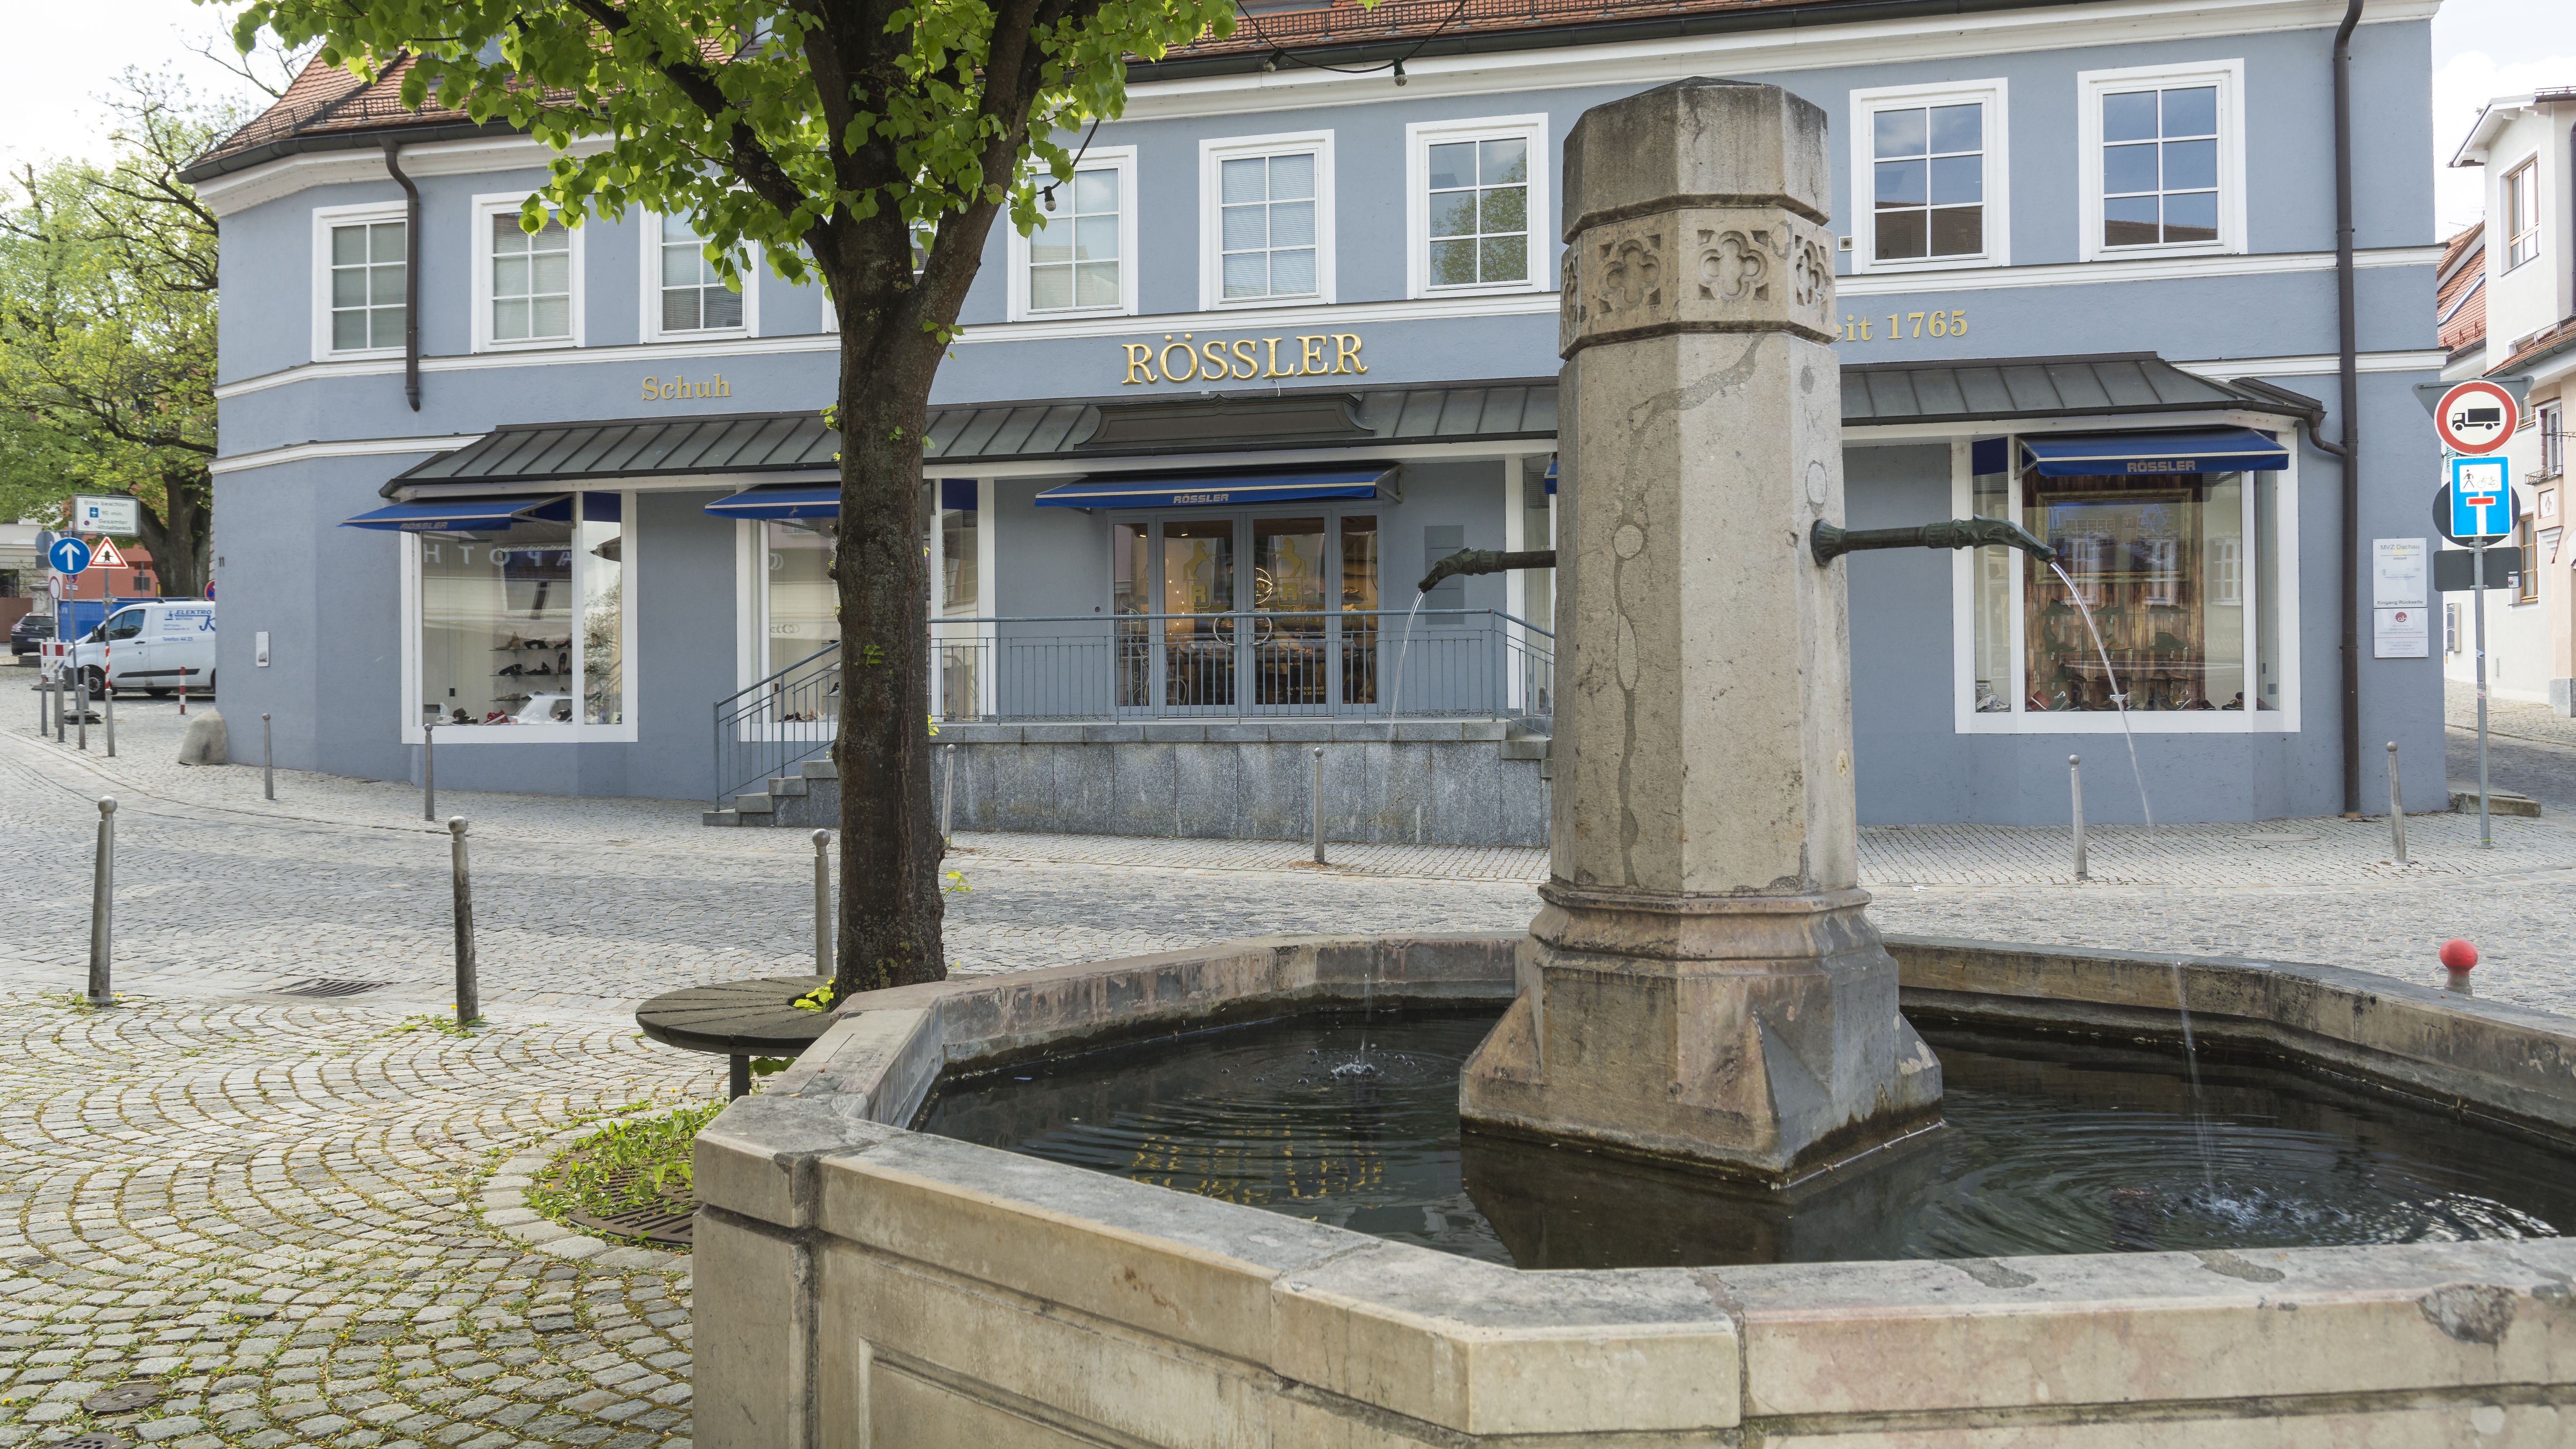 Roßmarktbrunnen in Dachau, dahinter blaues Gebäude "Schuh Rößler"